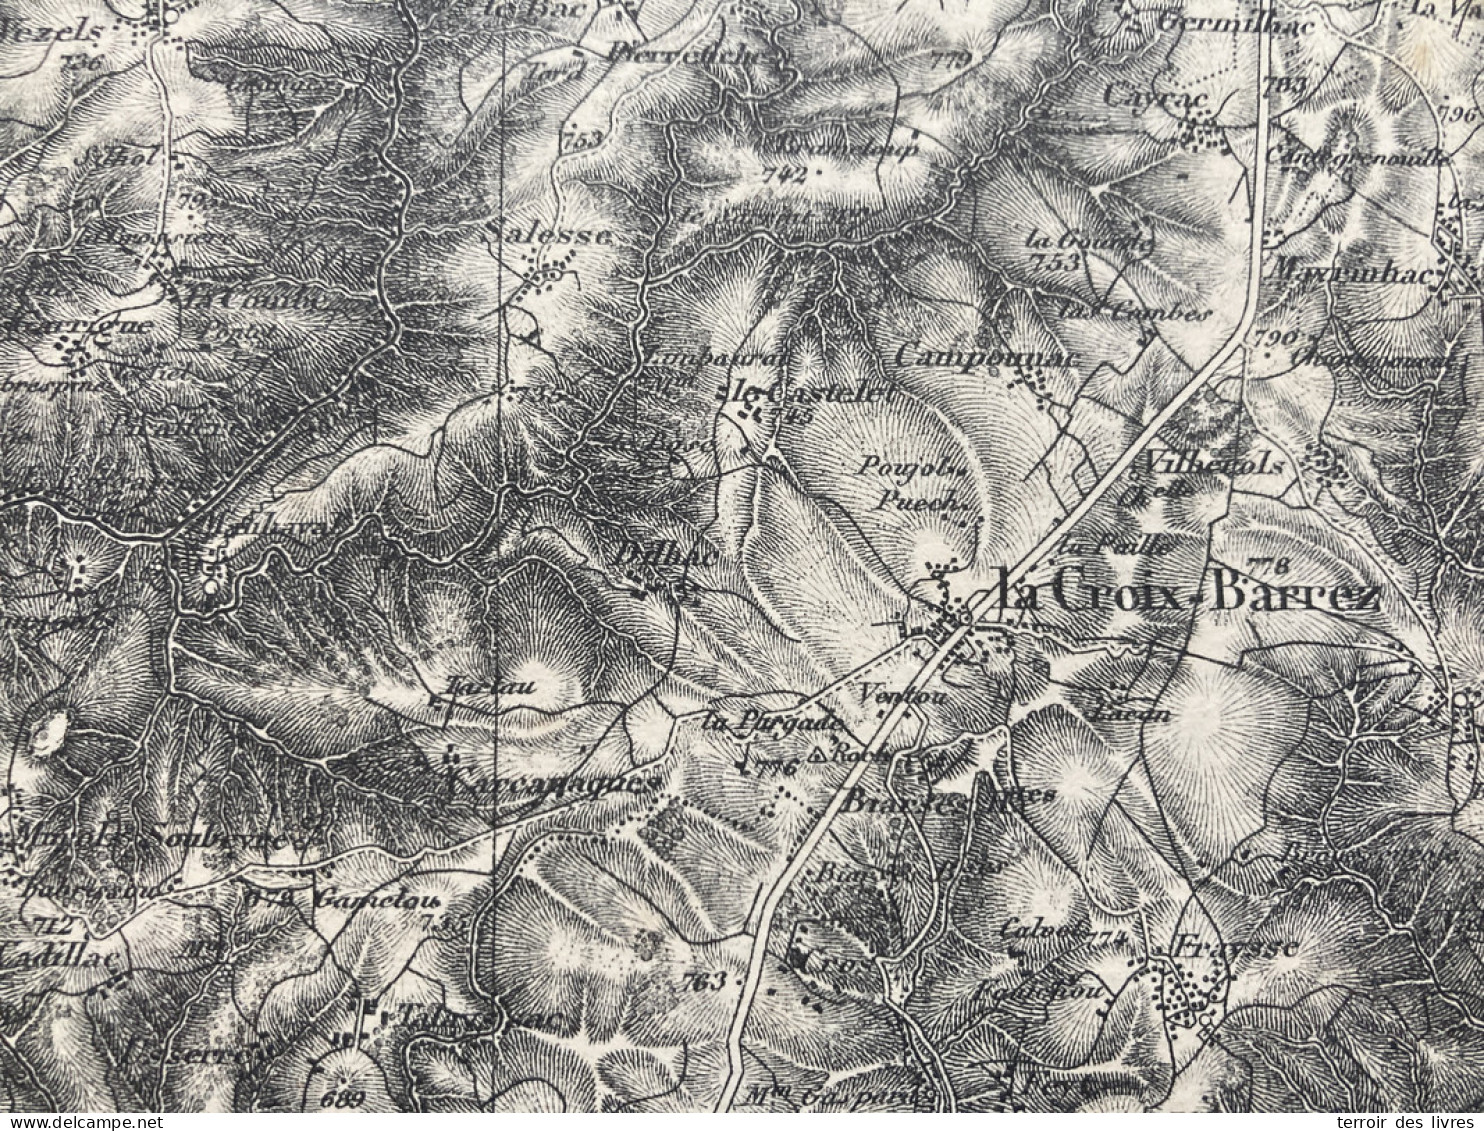 Carte état Major FIGEAC 1892 35x54cm LADINHAC LEUCAMP LAPEYRUGUE LABESSERETTE SANSAC-VEINAZES MUROLS LAFEUILLADE-EN-VEZI - Cartes Géographiques